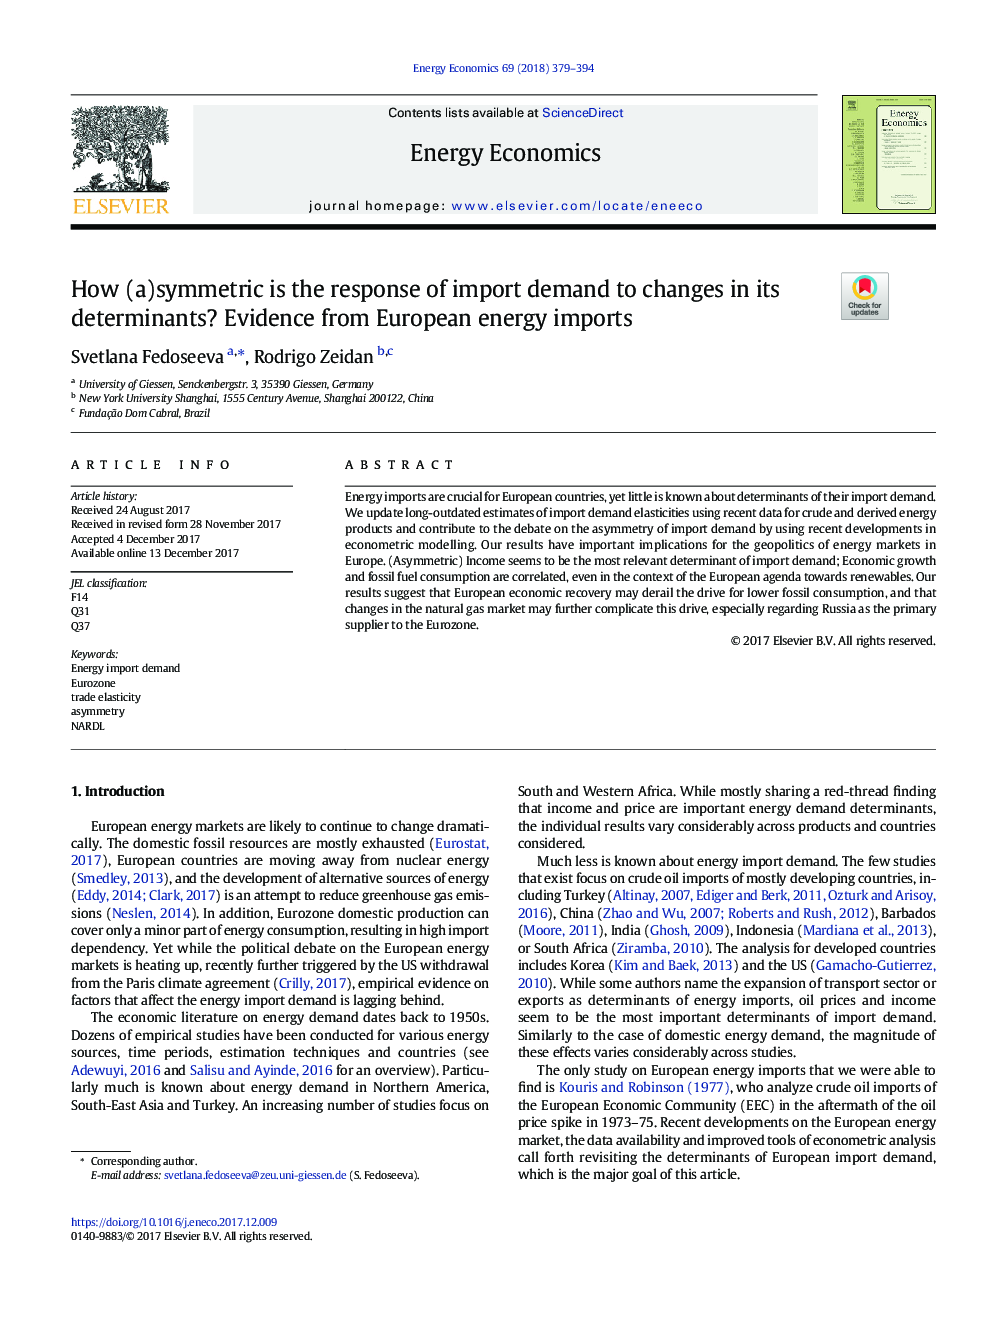 چگونه (الف) متقارن پاسخ تقاضای واردات به تغییرات عوامل تعیین کننده آن است؟ شواهد از واردات انرژی اروپا 